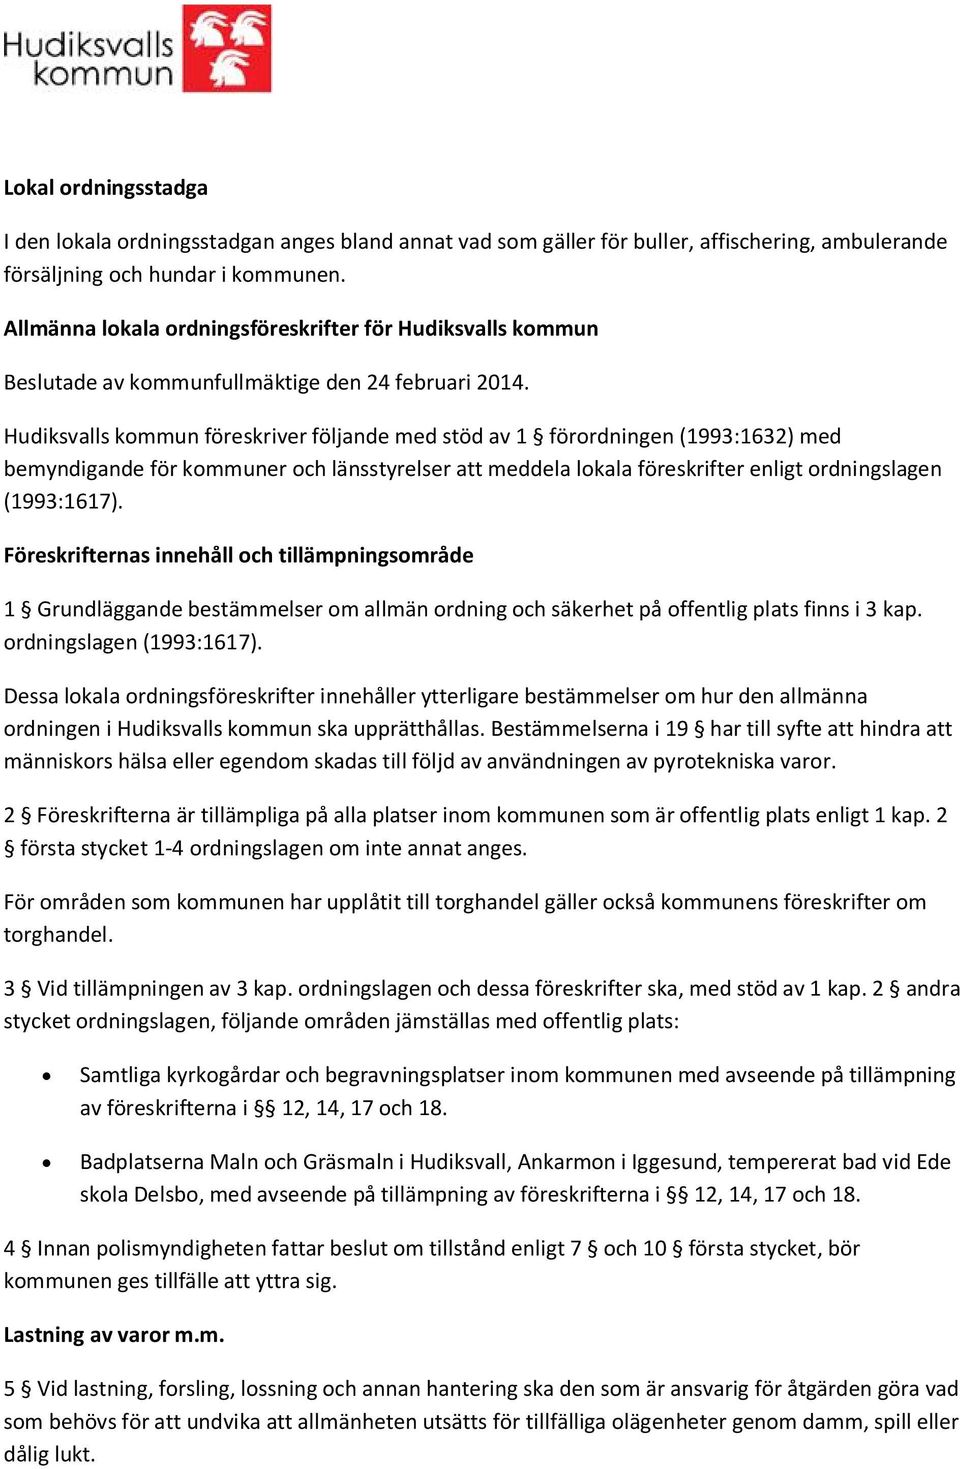 Hudiksvalls kommun föreskriver följande med stöd av 1 förordningen (1993:1632) med bemyndigande för kommuner och länsstyrelser att meddela lokala föreskrifter enligt ordningslagen (1993:1617).